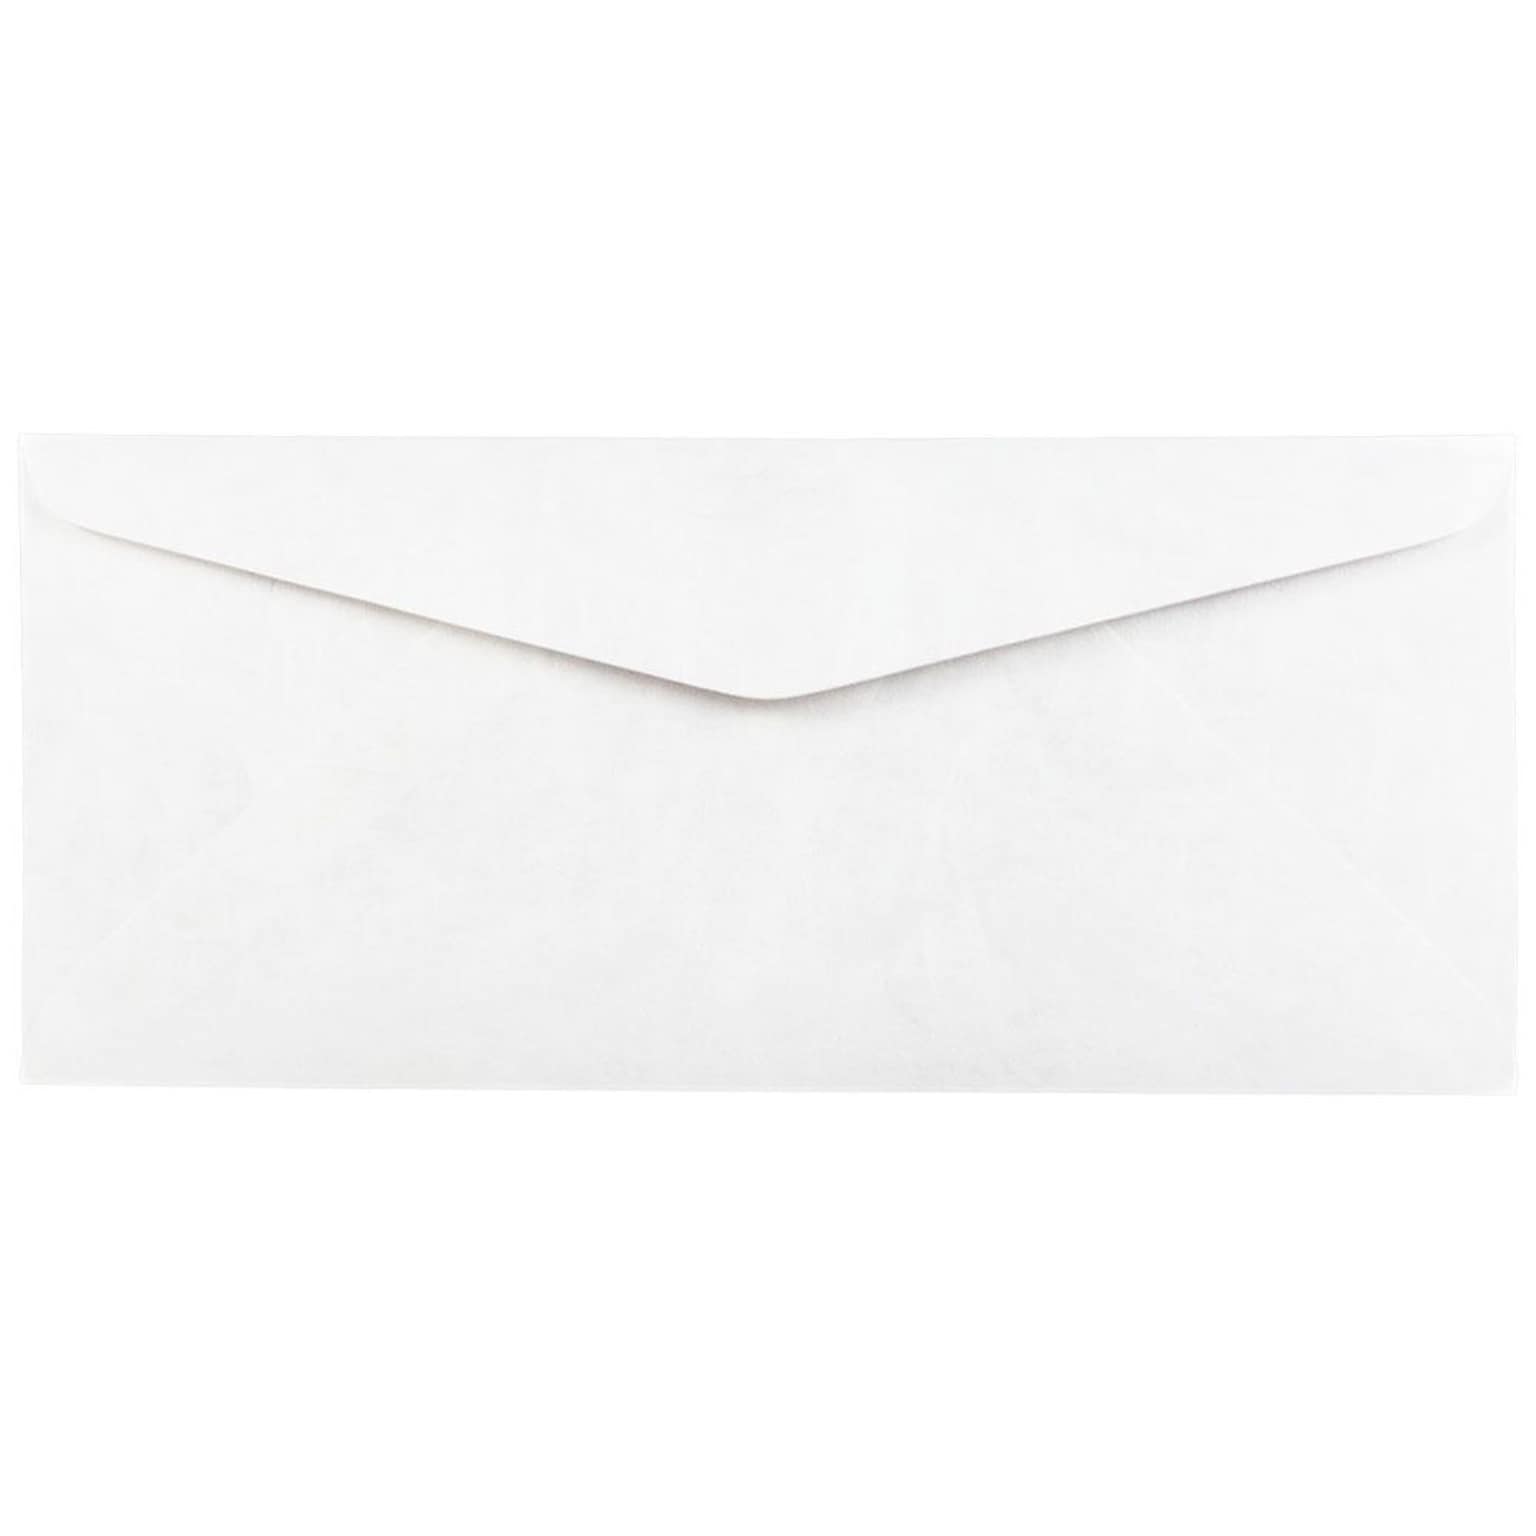 JAM Paper #10 Business Envelope, 4 1/8 x 9 1/2, White, 50/Pack (2131077C)